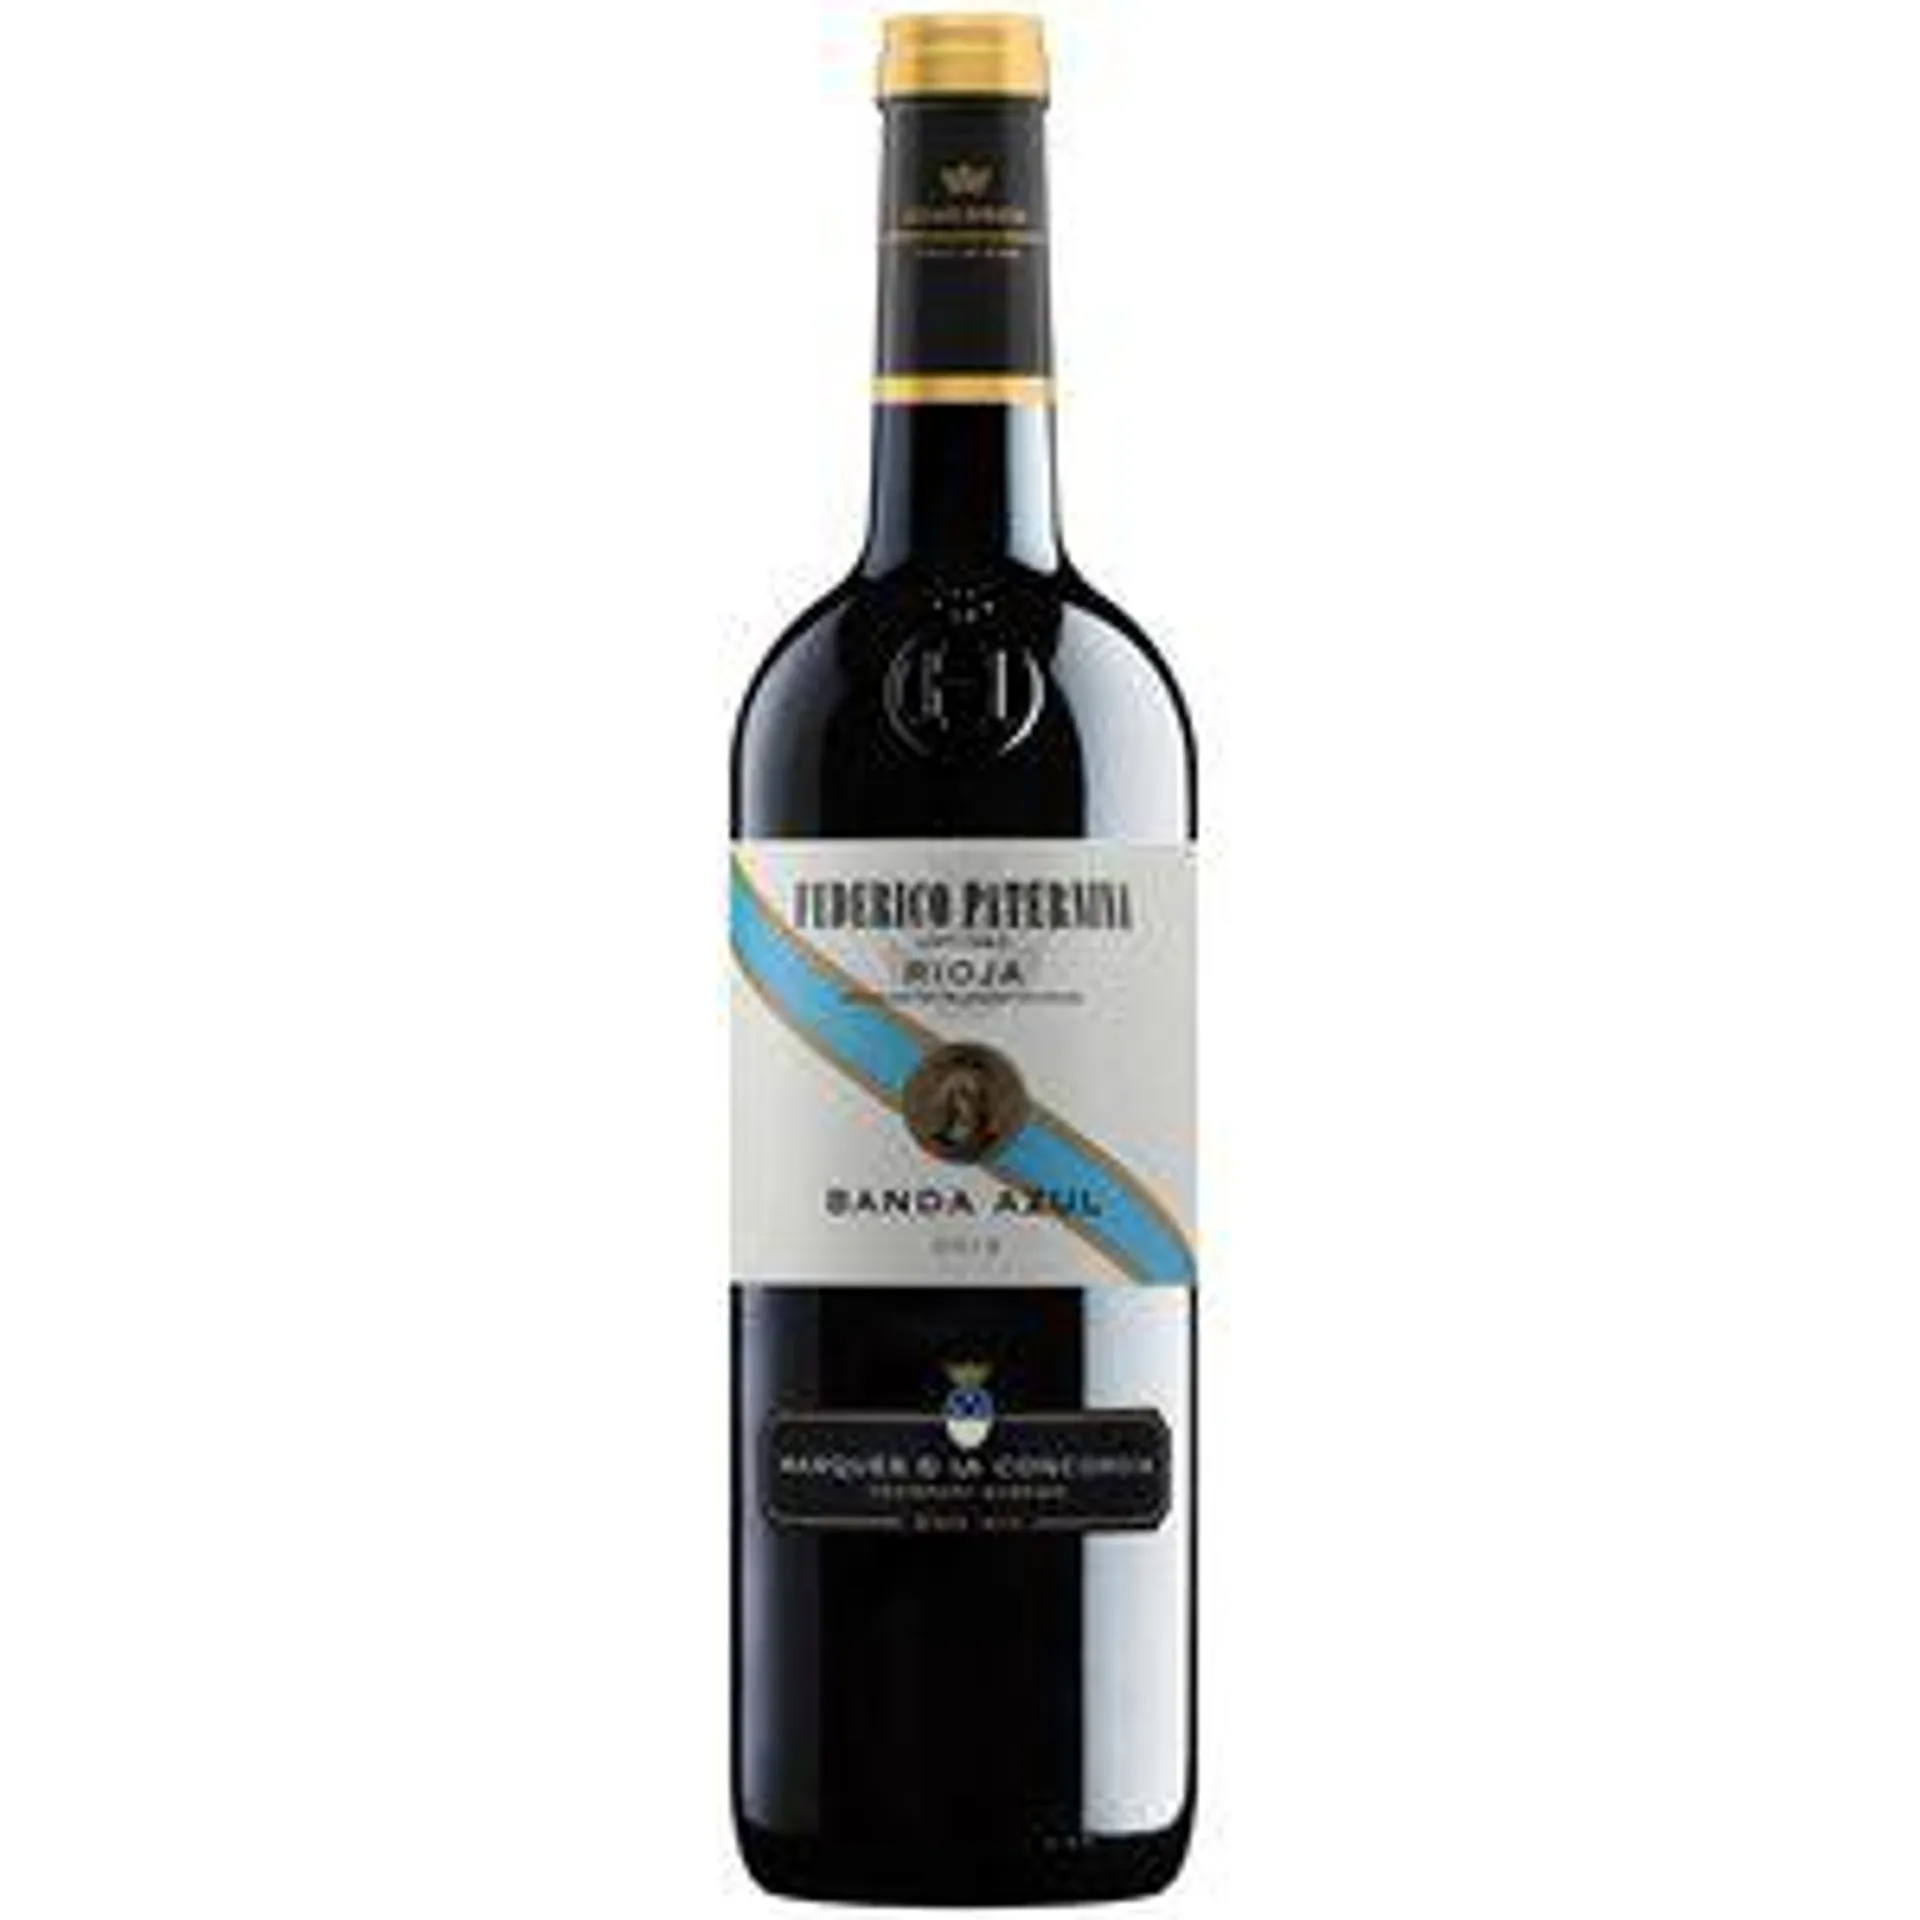 FEDERICO PATERNINA vino tinto 12 meses banda azul DO Rioja botella 75 cl